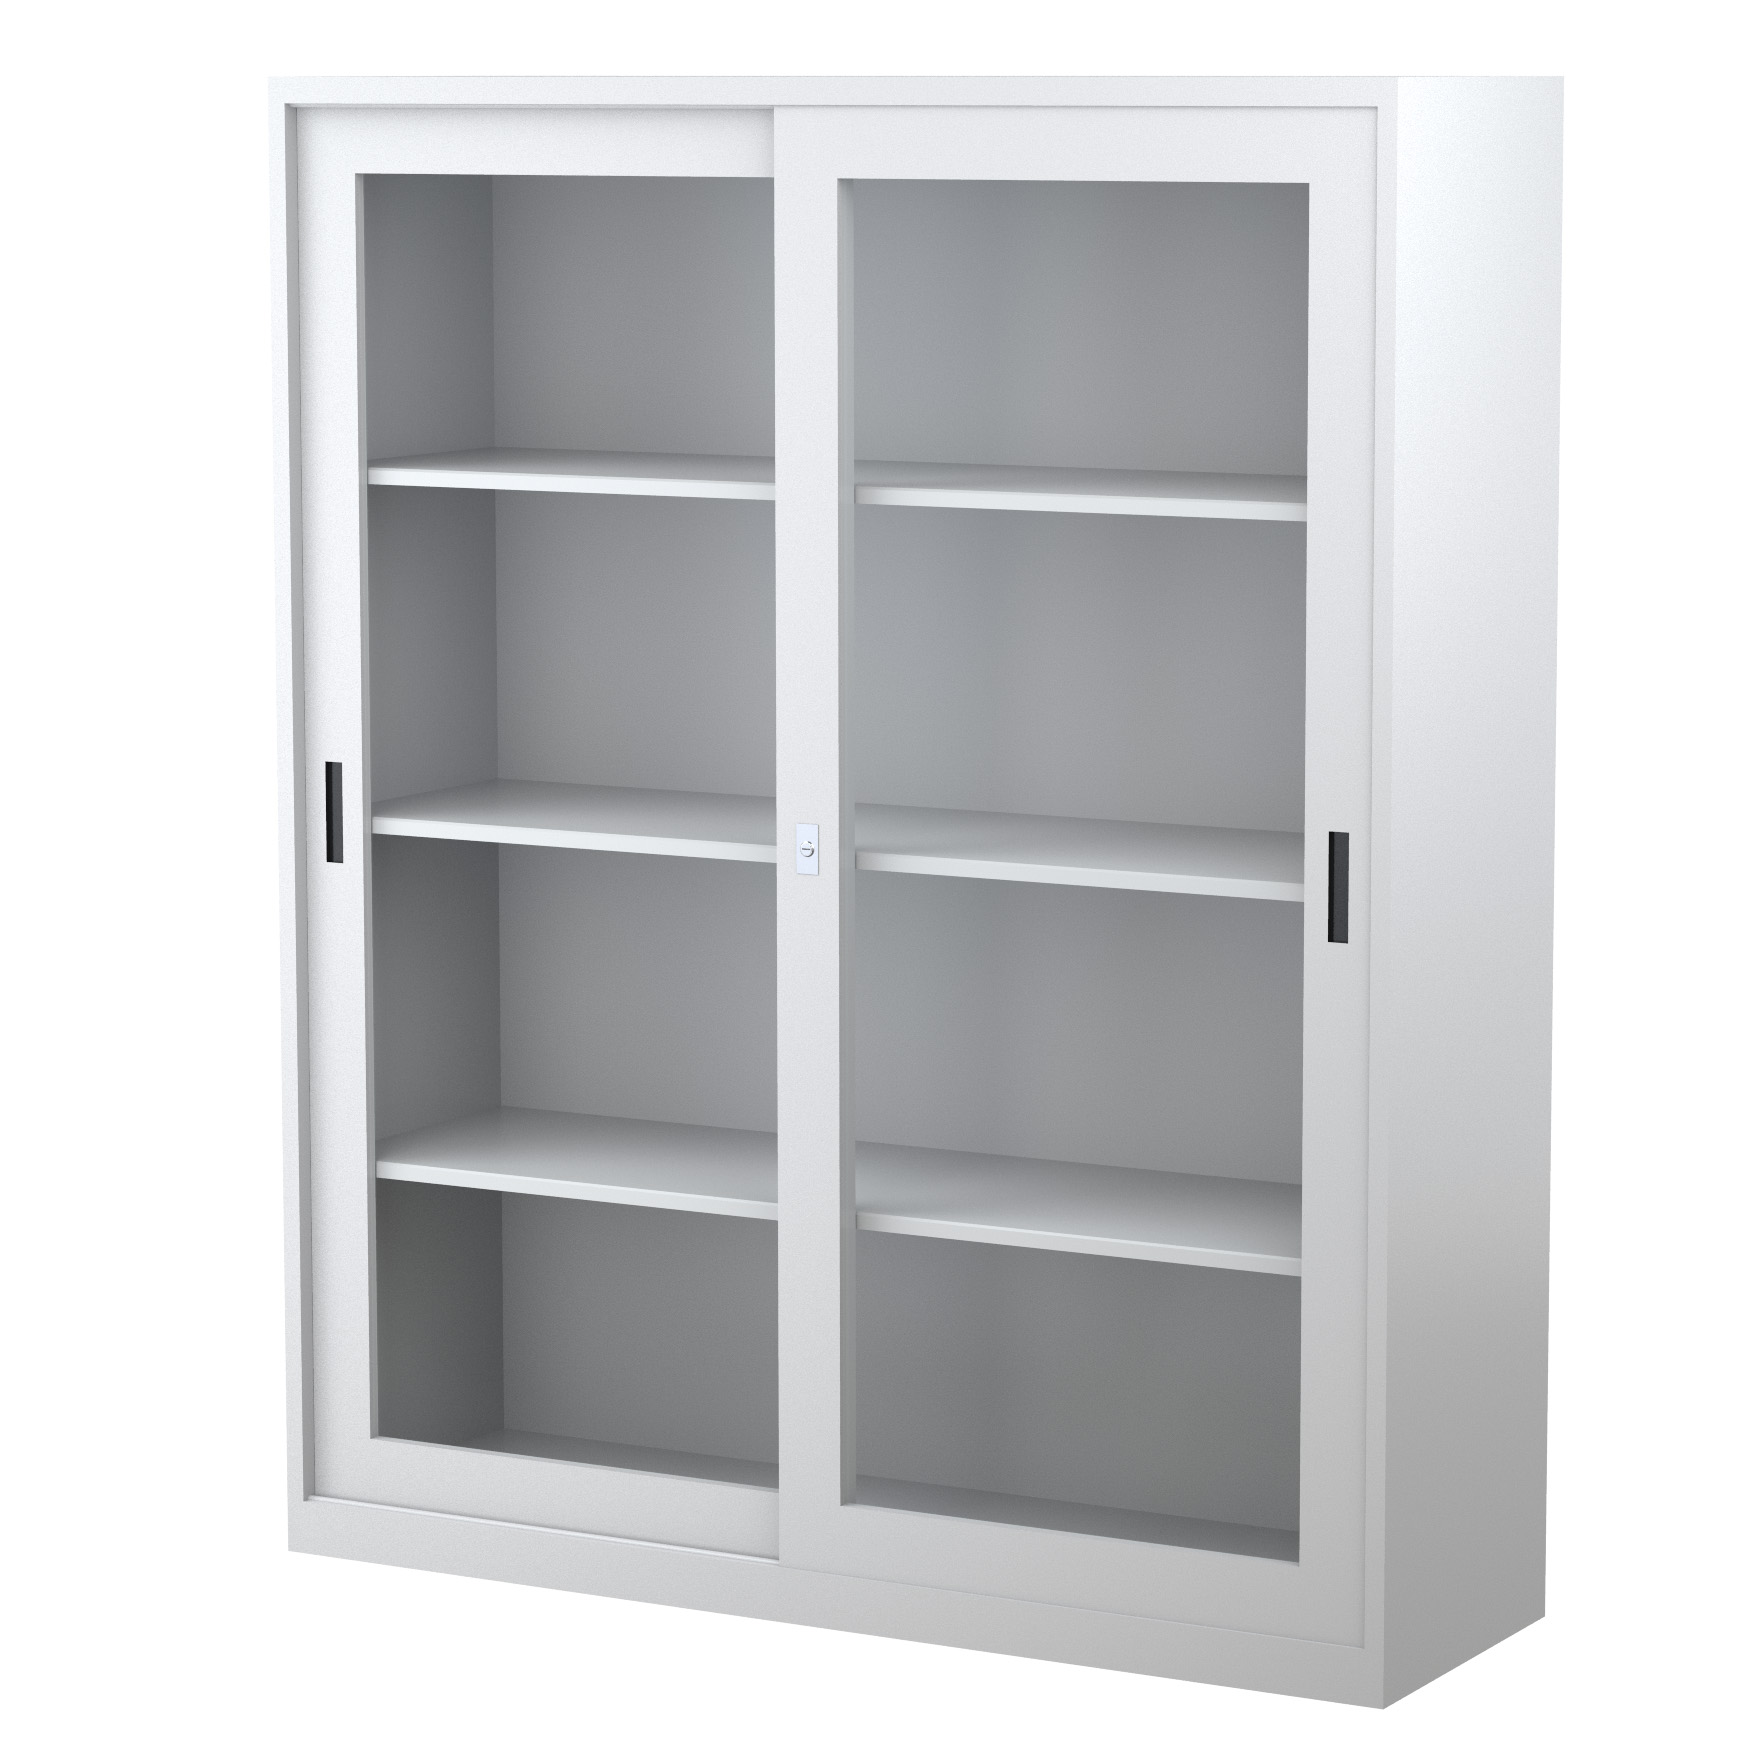 GD1830_1500 - STEELCO SG Cabinet 1830H x 1500W x 465D - 3 Shelves-GR12.jpg